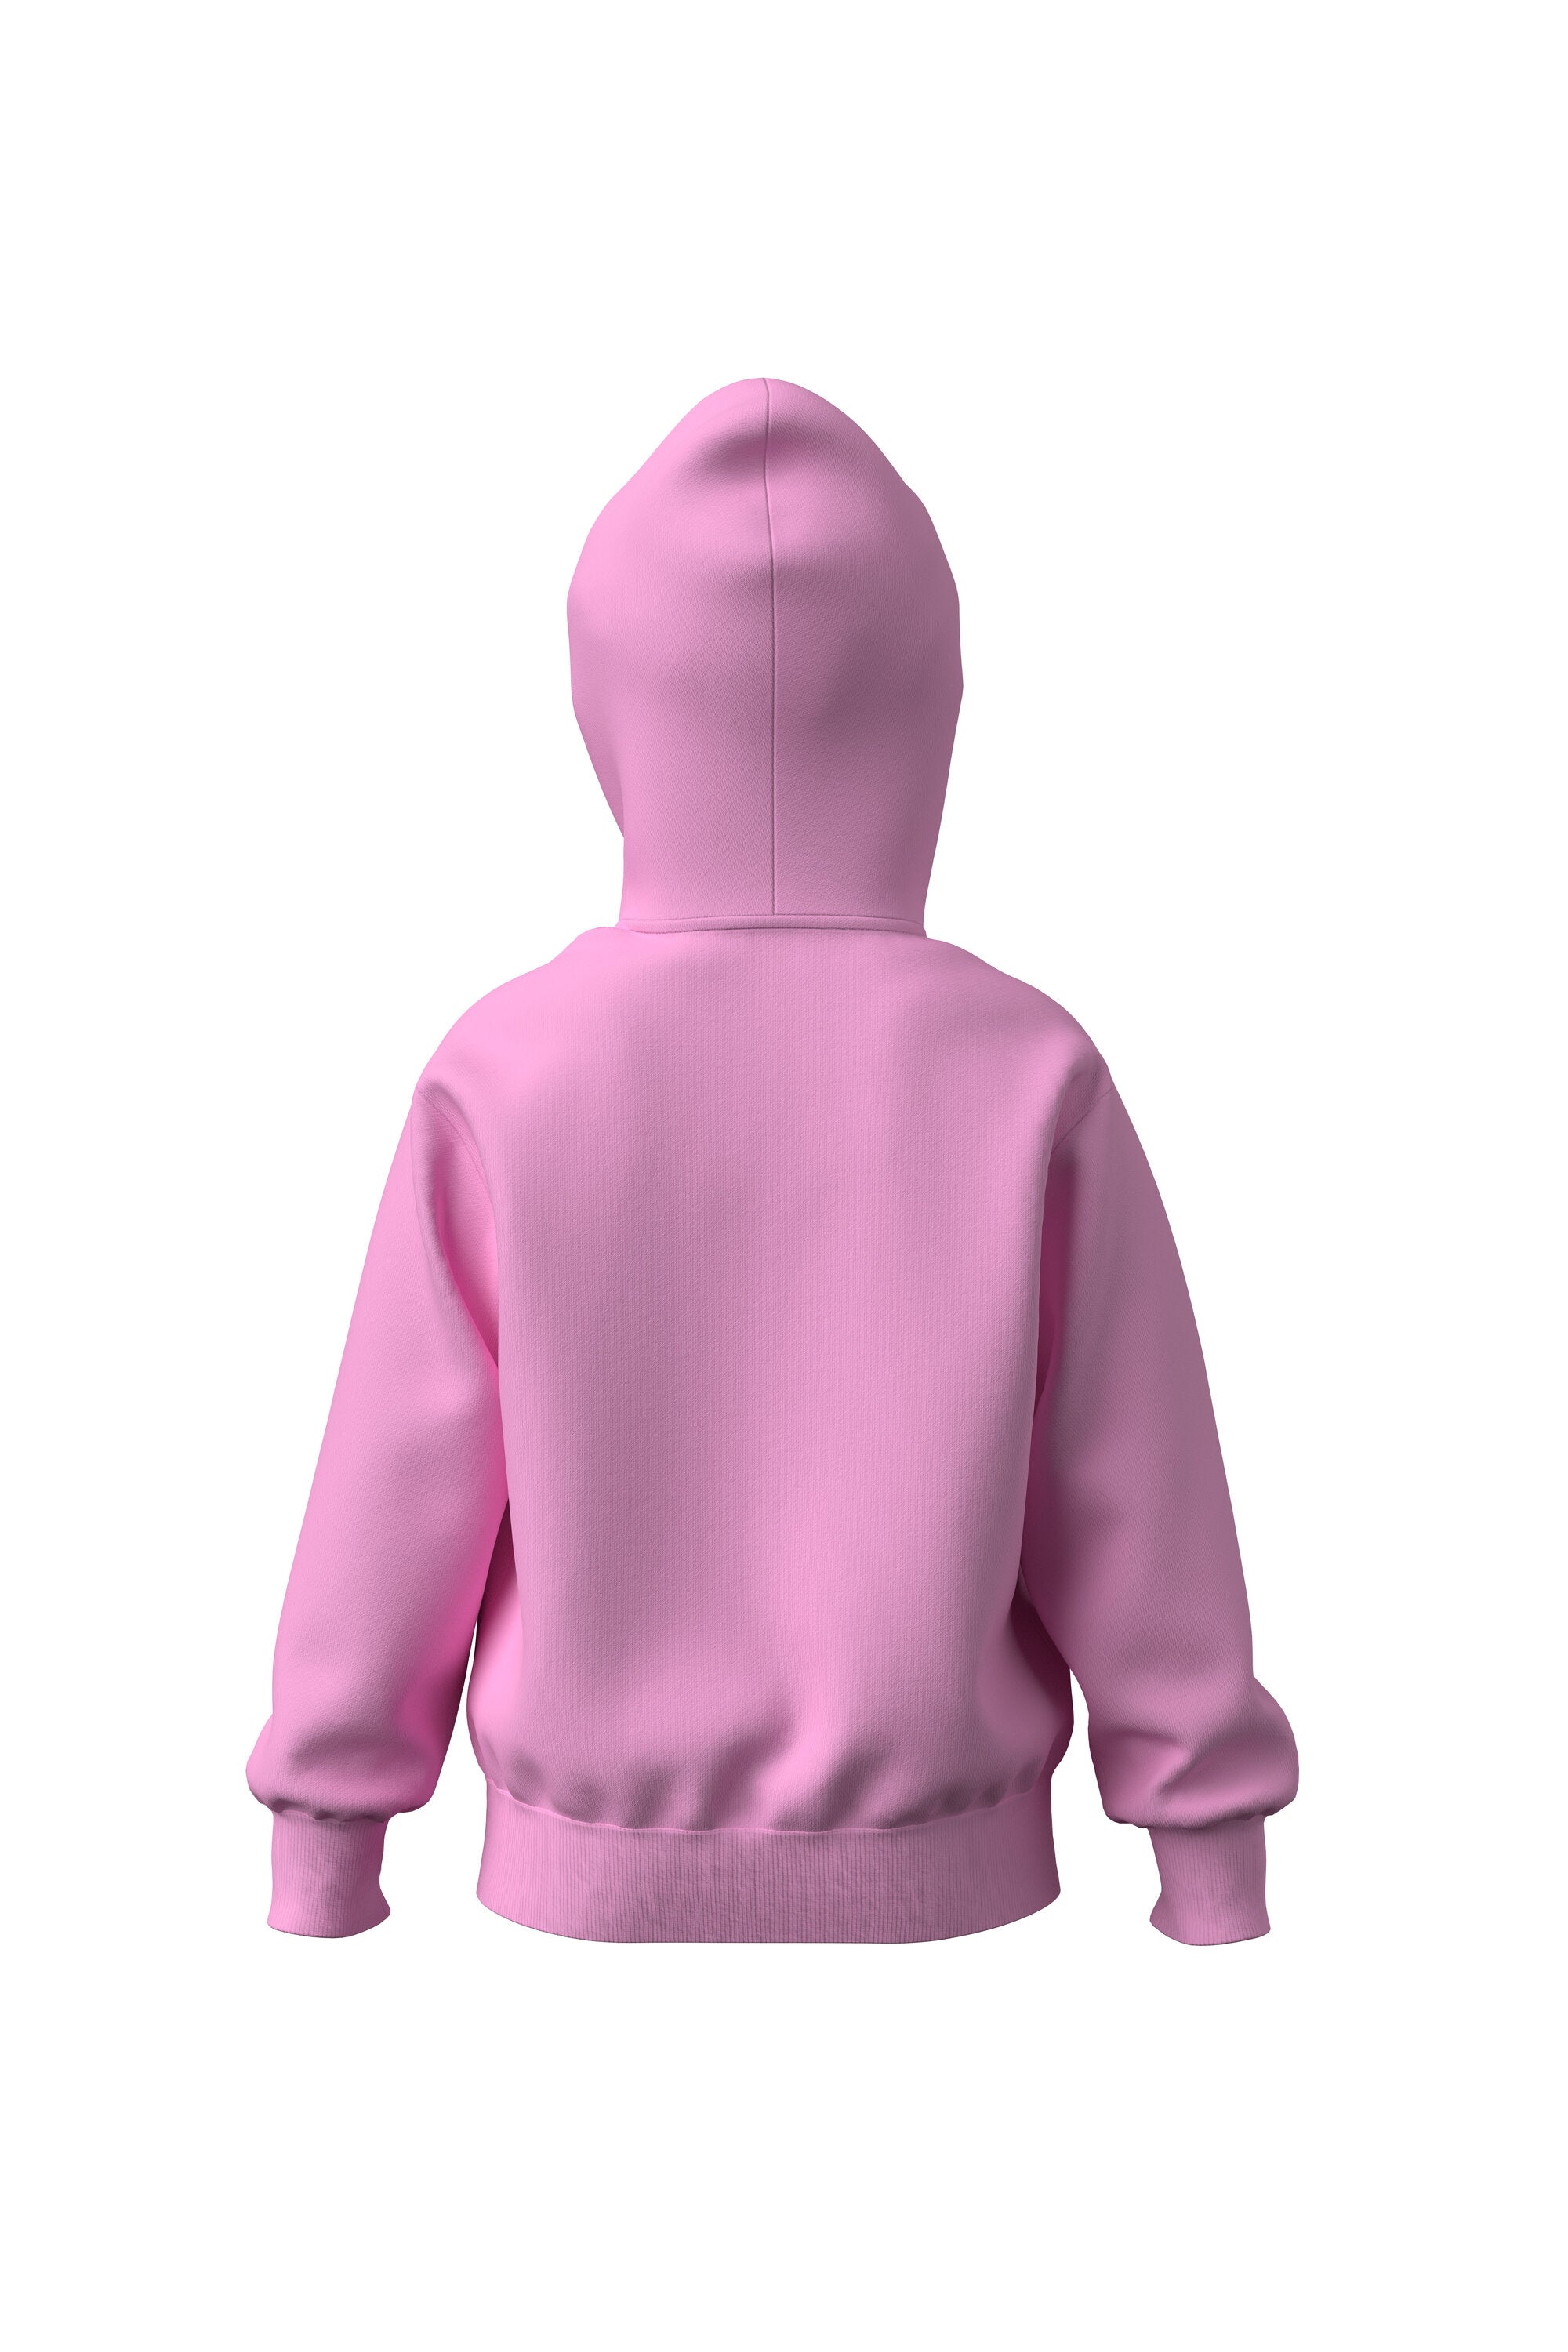 Sudadera de algodón rosa con cremallera, capucha y logotipo D bordado Diesel para niños Brave Kid